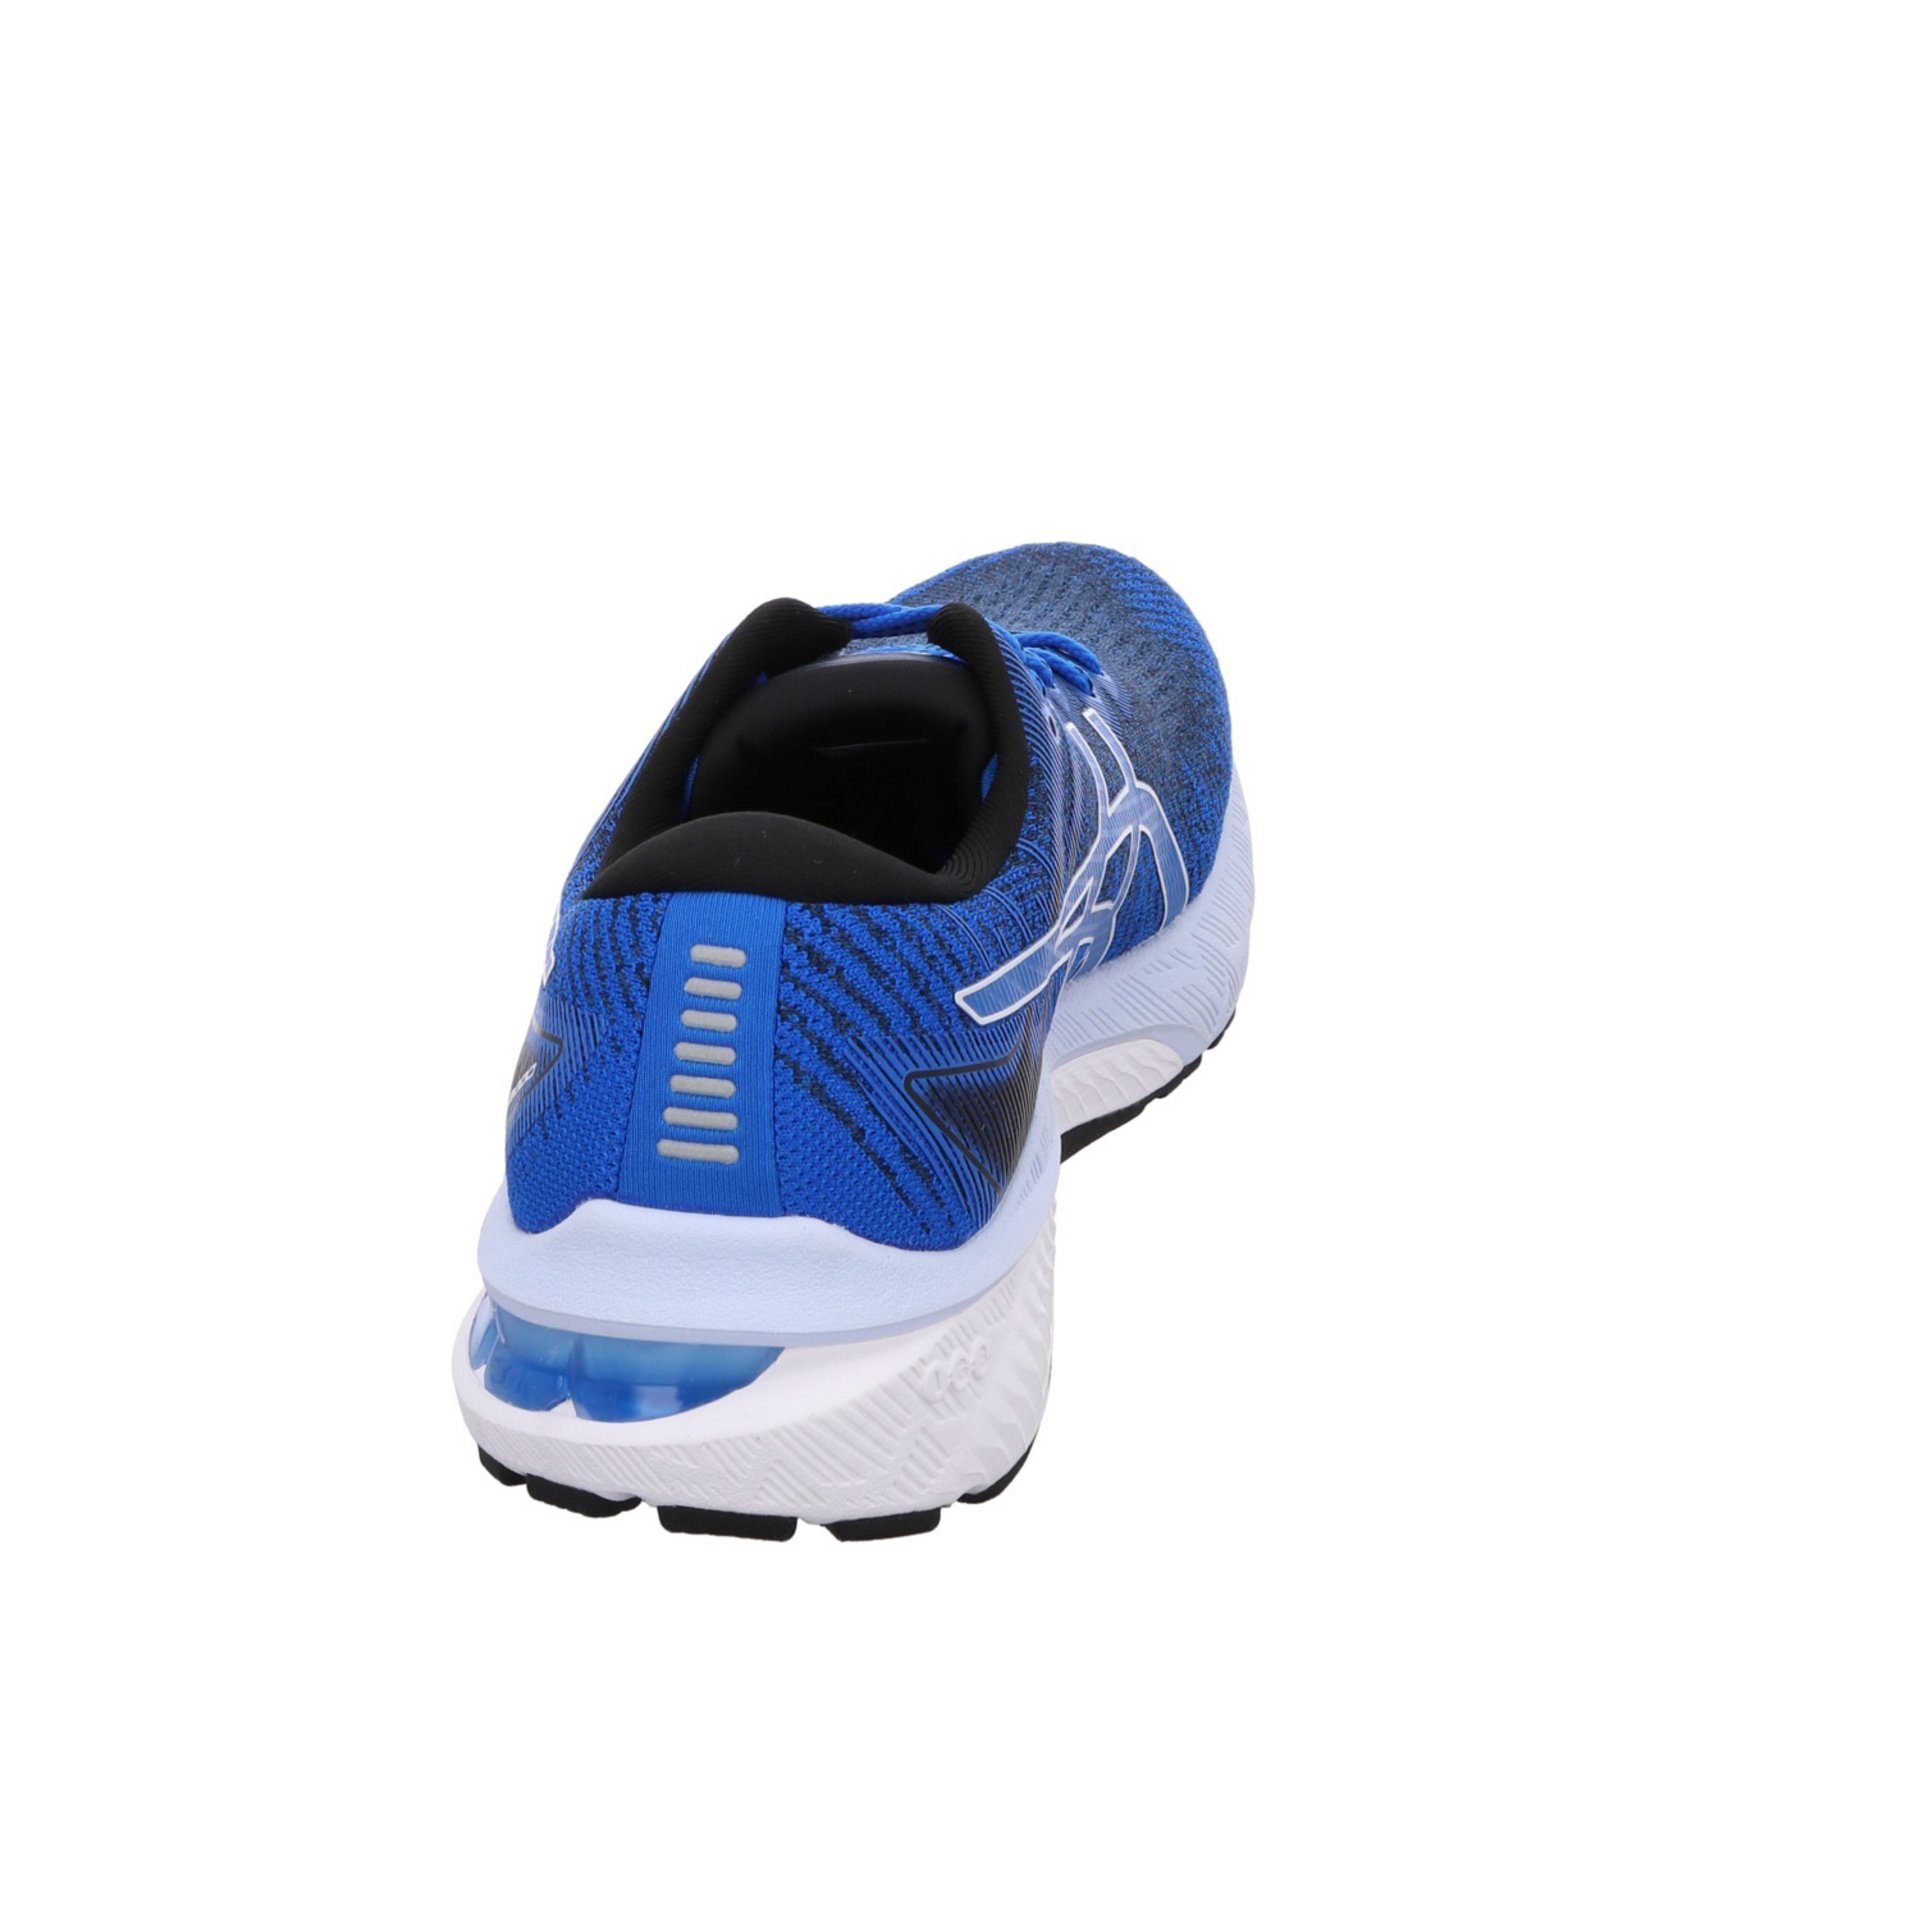 kombi-weiss Laufschuh Laufschuhe Asics Textil GT-2000 blau Damen Laufschuh